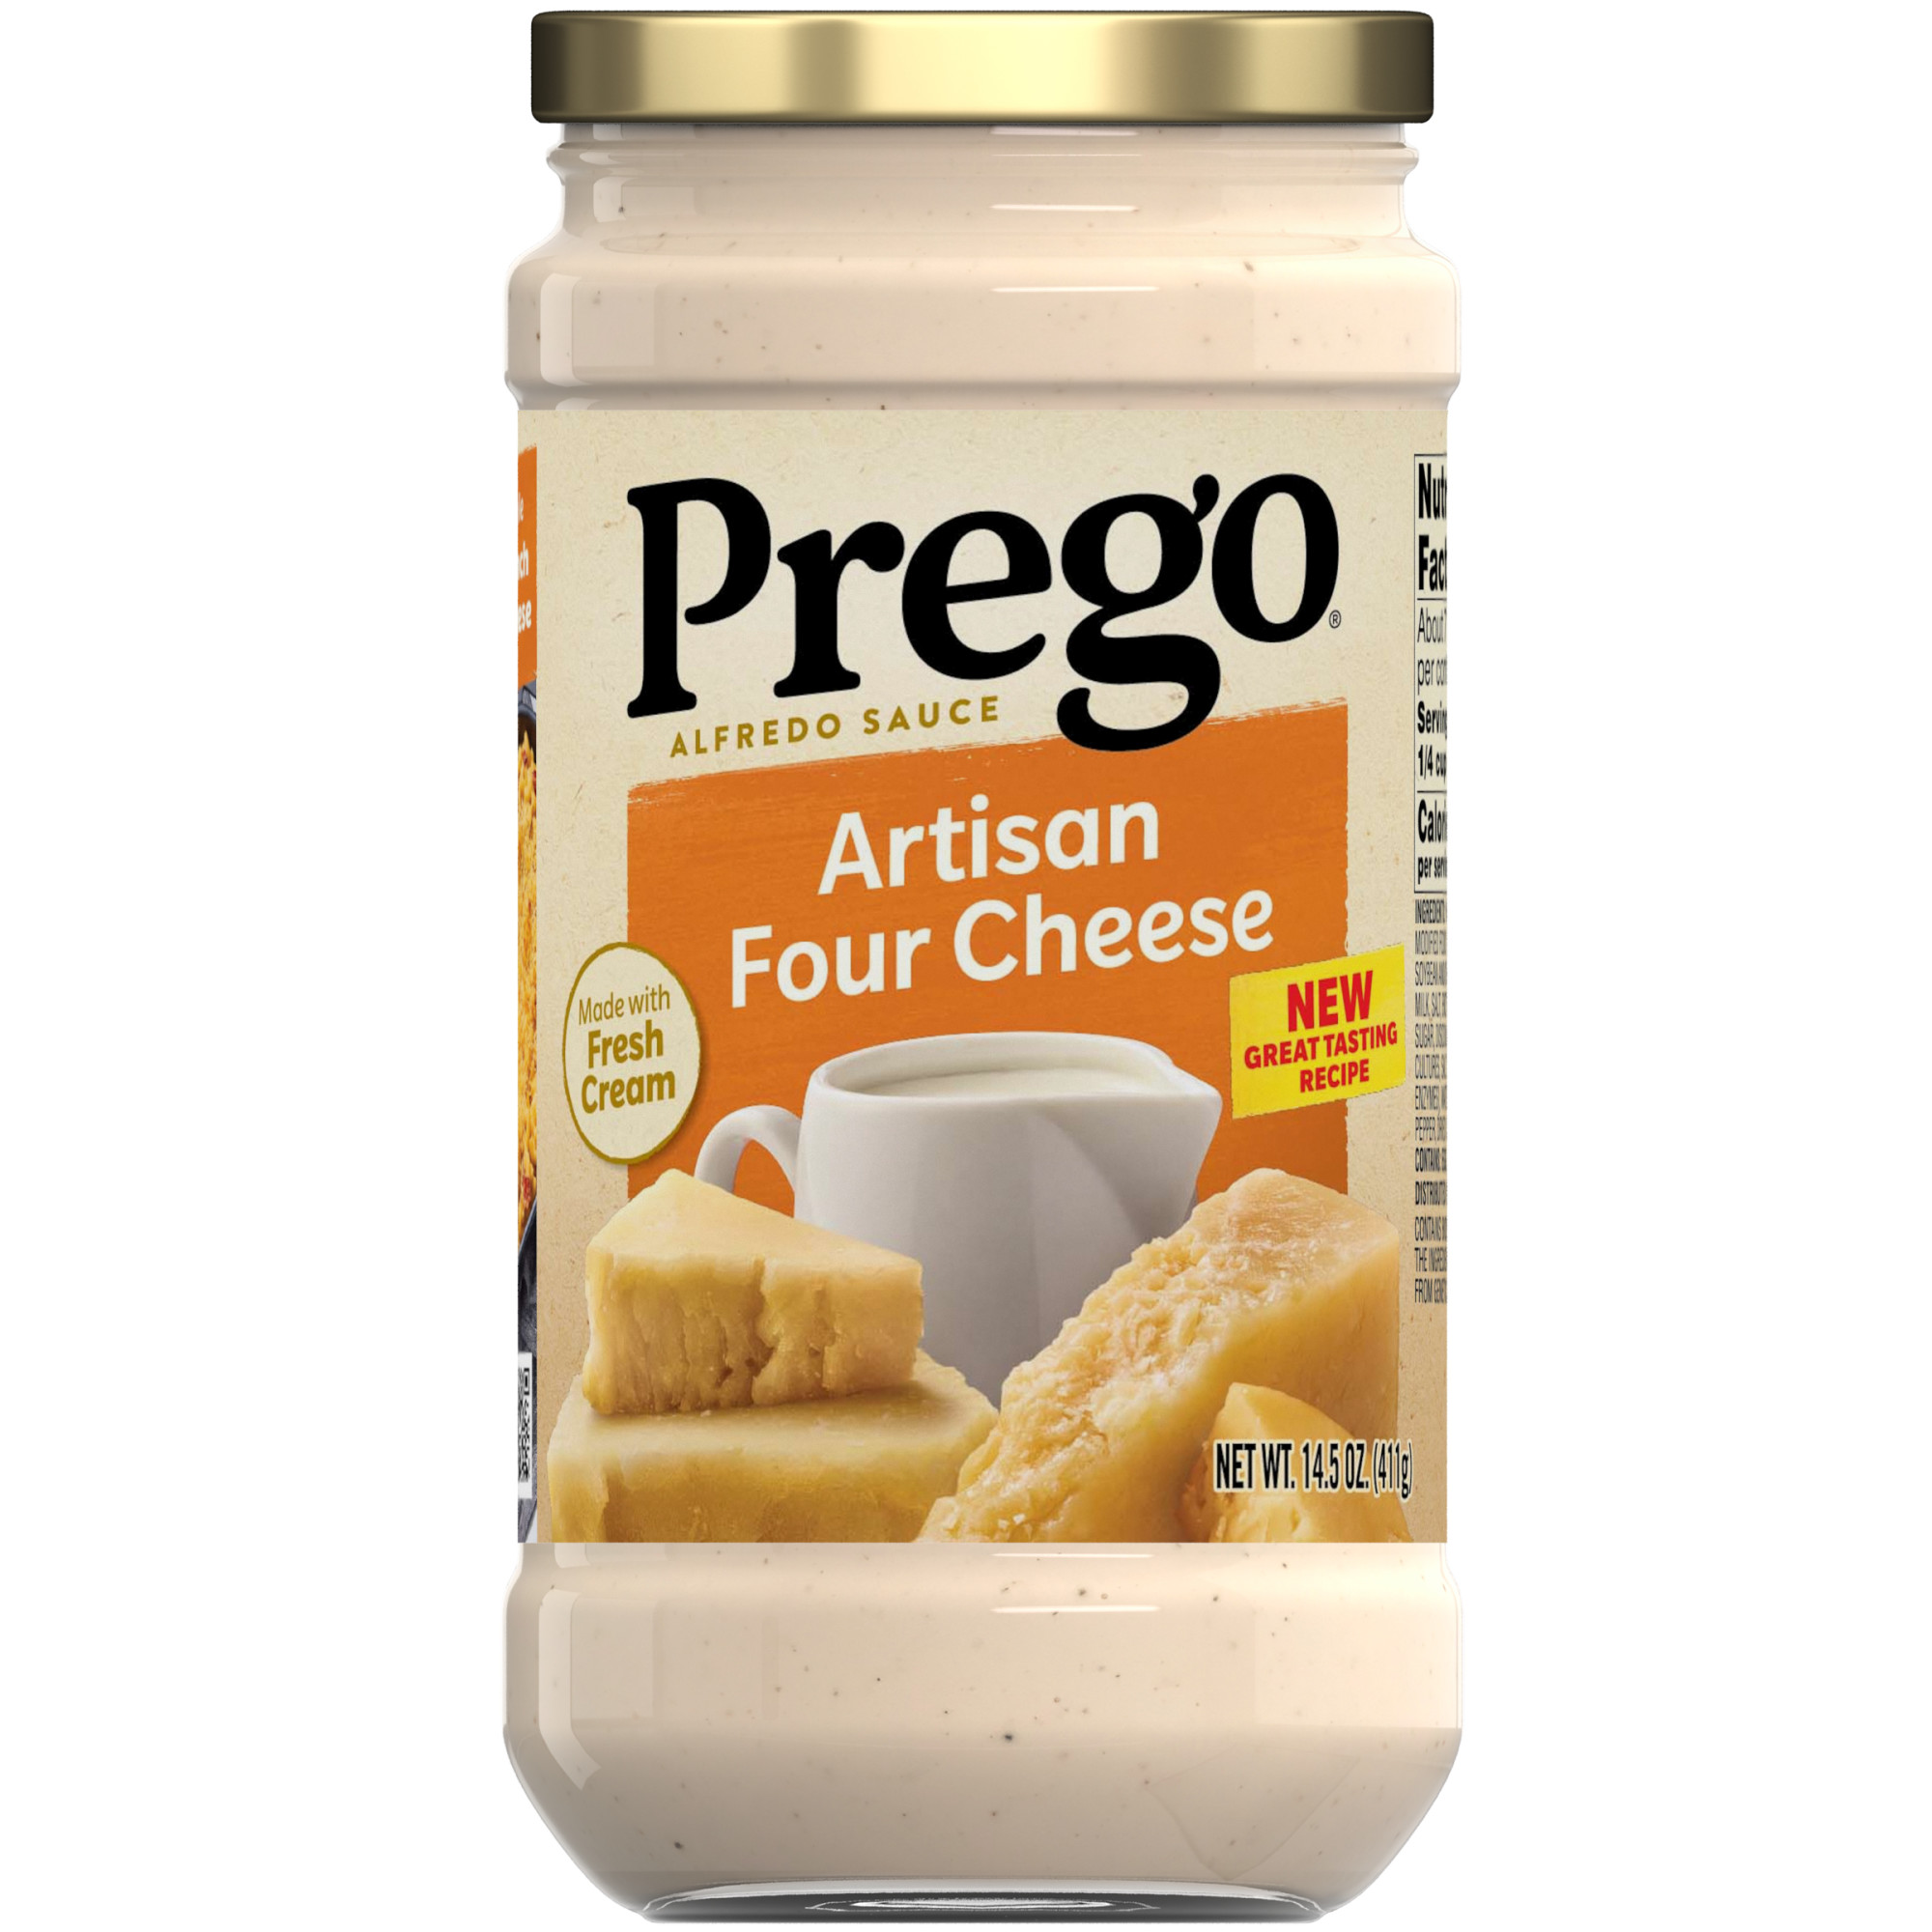 Prego Artisan Four Cheese Alfredo Pasta Sauce, 14.5 oz Jar - image 1 of 12